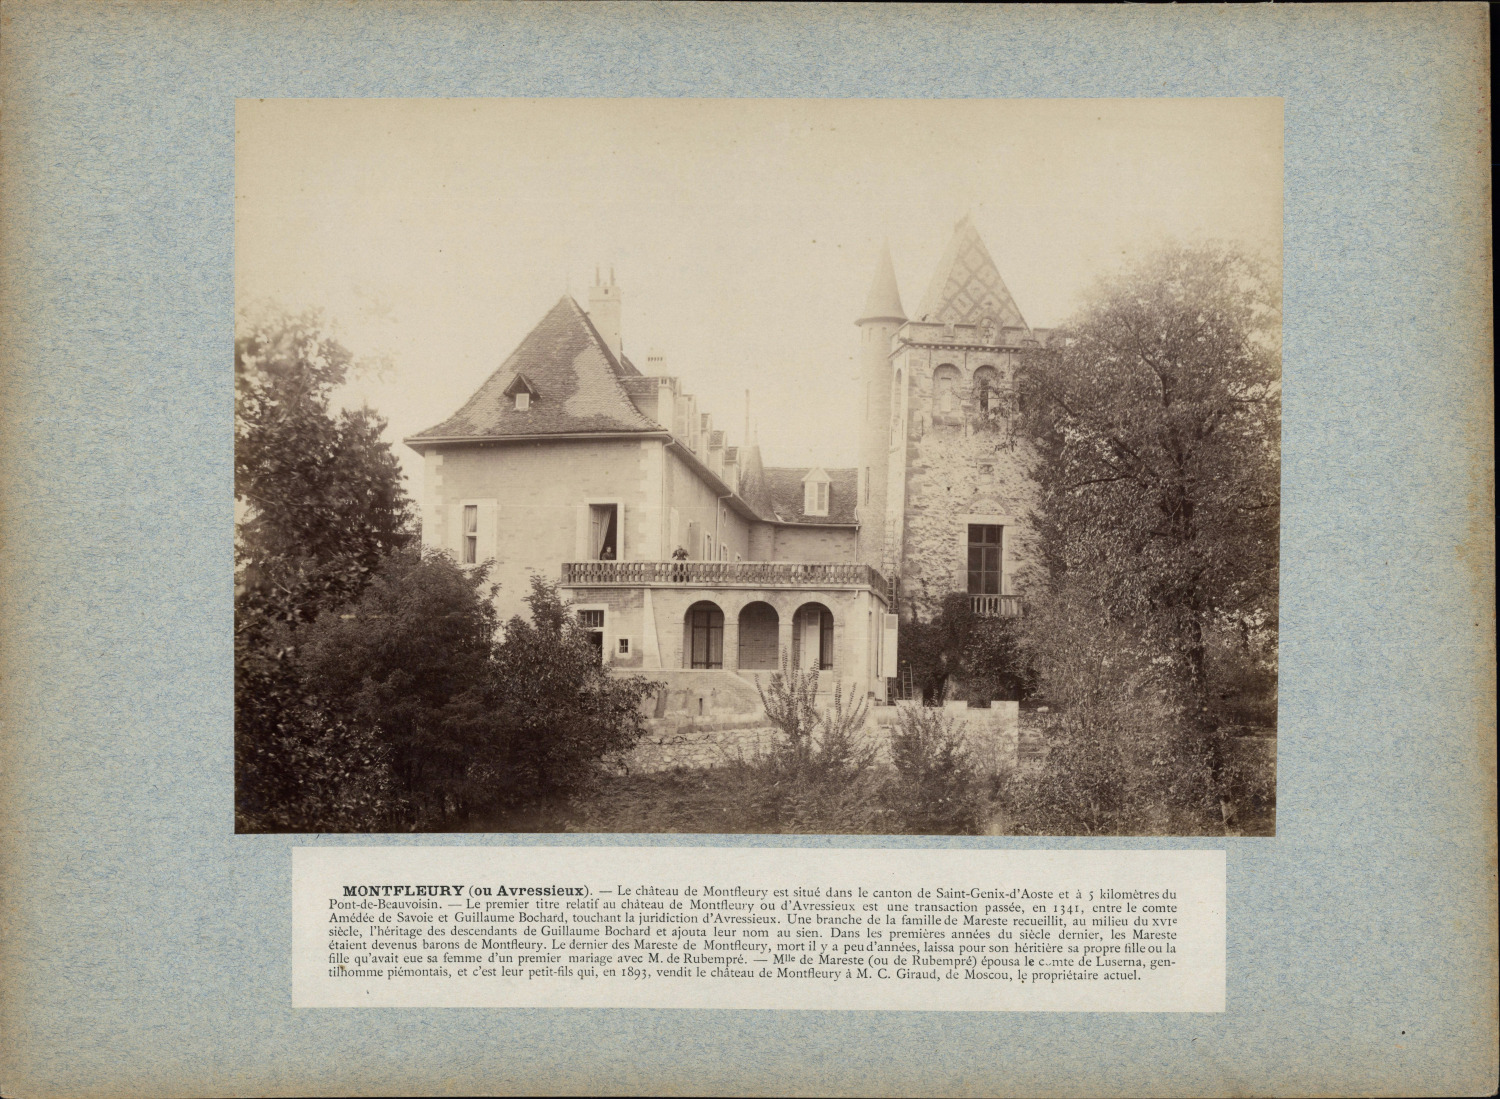 France, Avressieux, Château de Montfleury vintage print print period print 